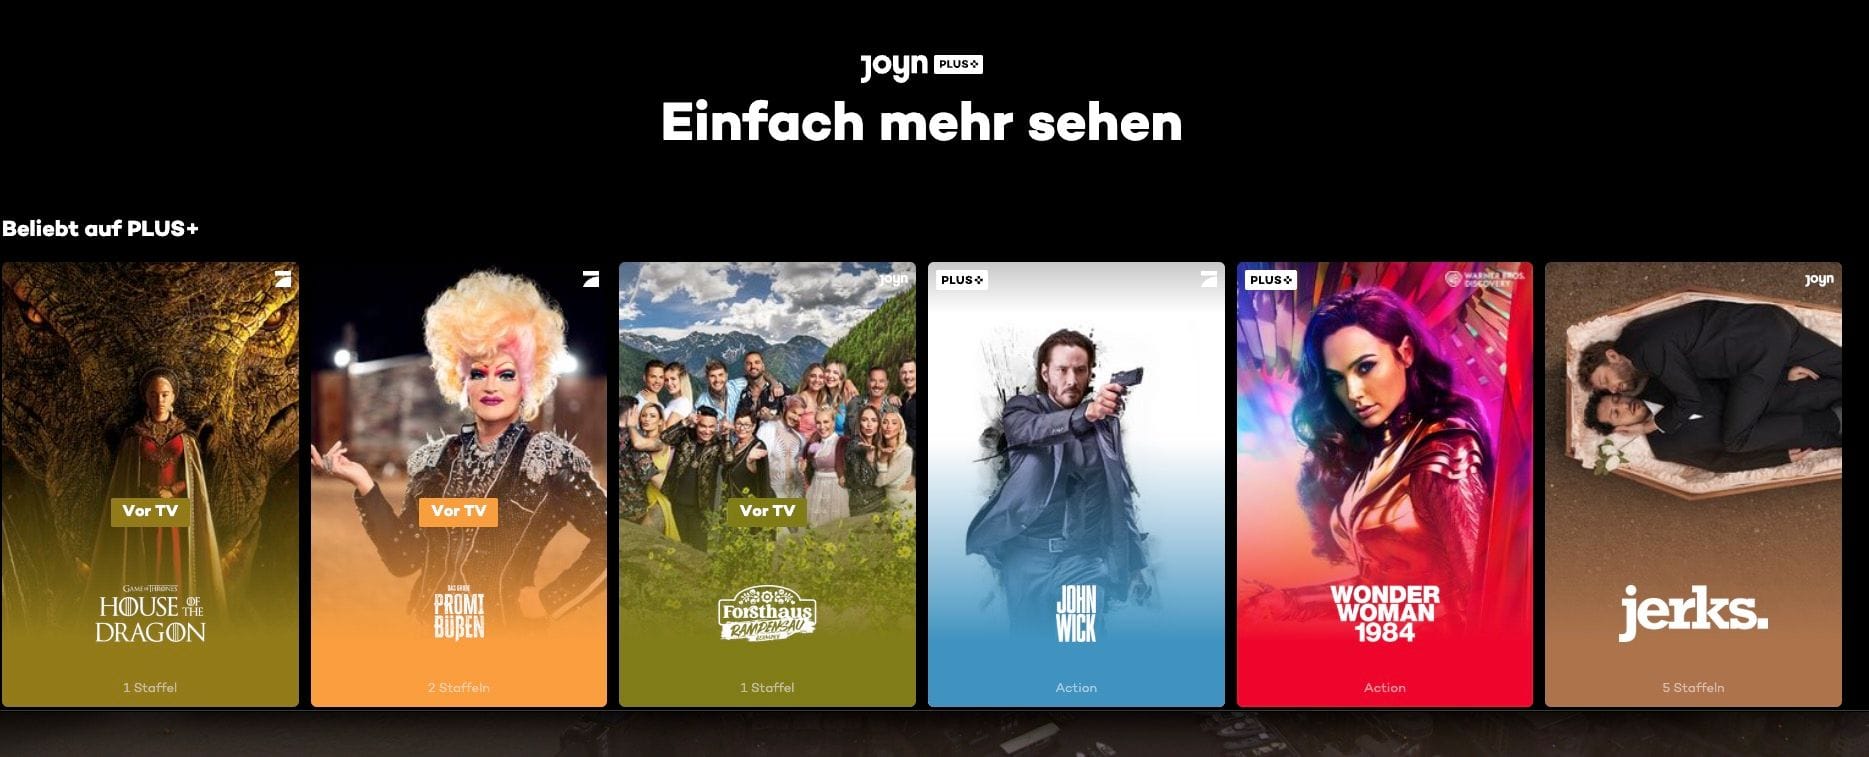 Internationale Inhalte und deutsche Produktionen gibt es bei Joyn.